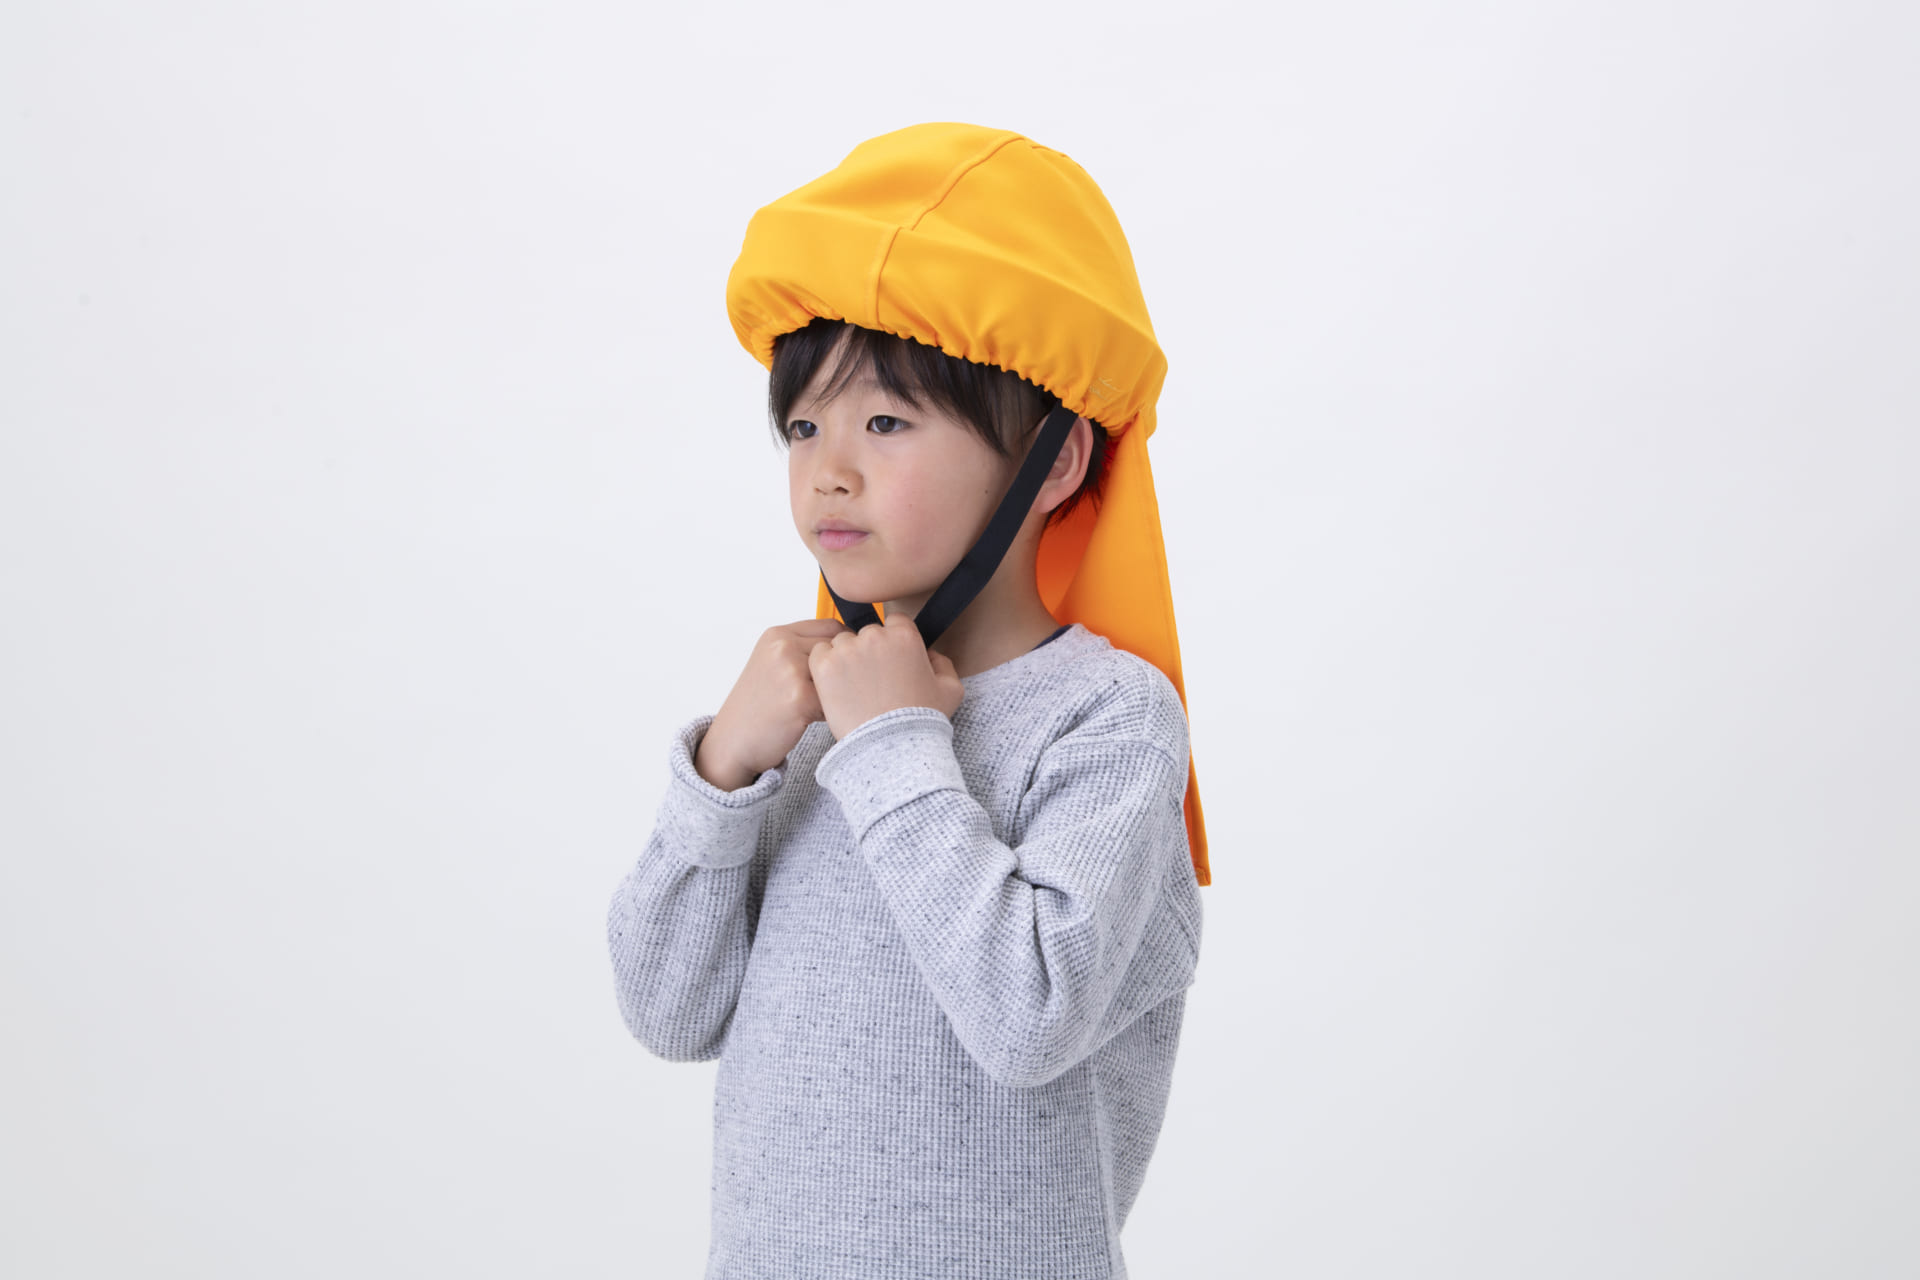 21世紀の防災頭巾「でるキャップ」から 子供向けの新シリーズが